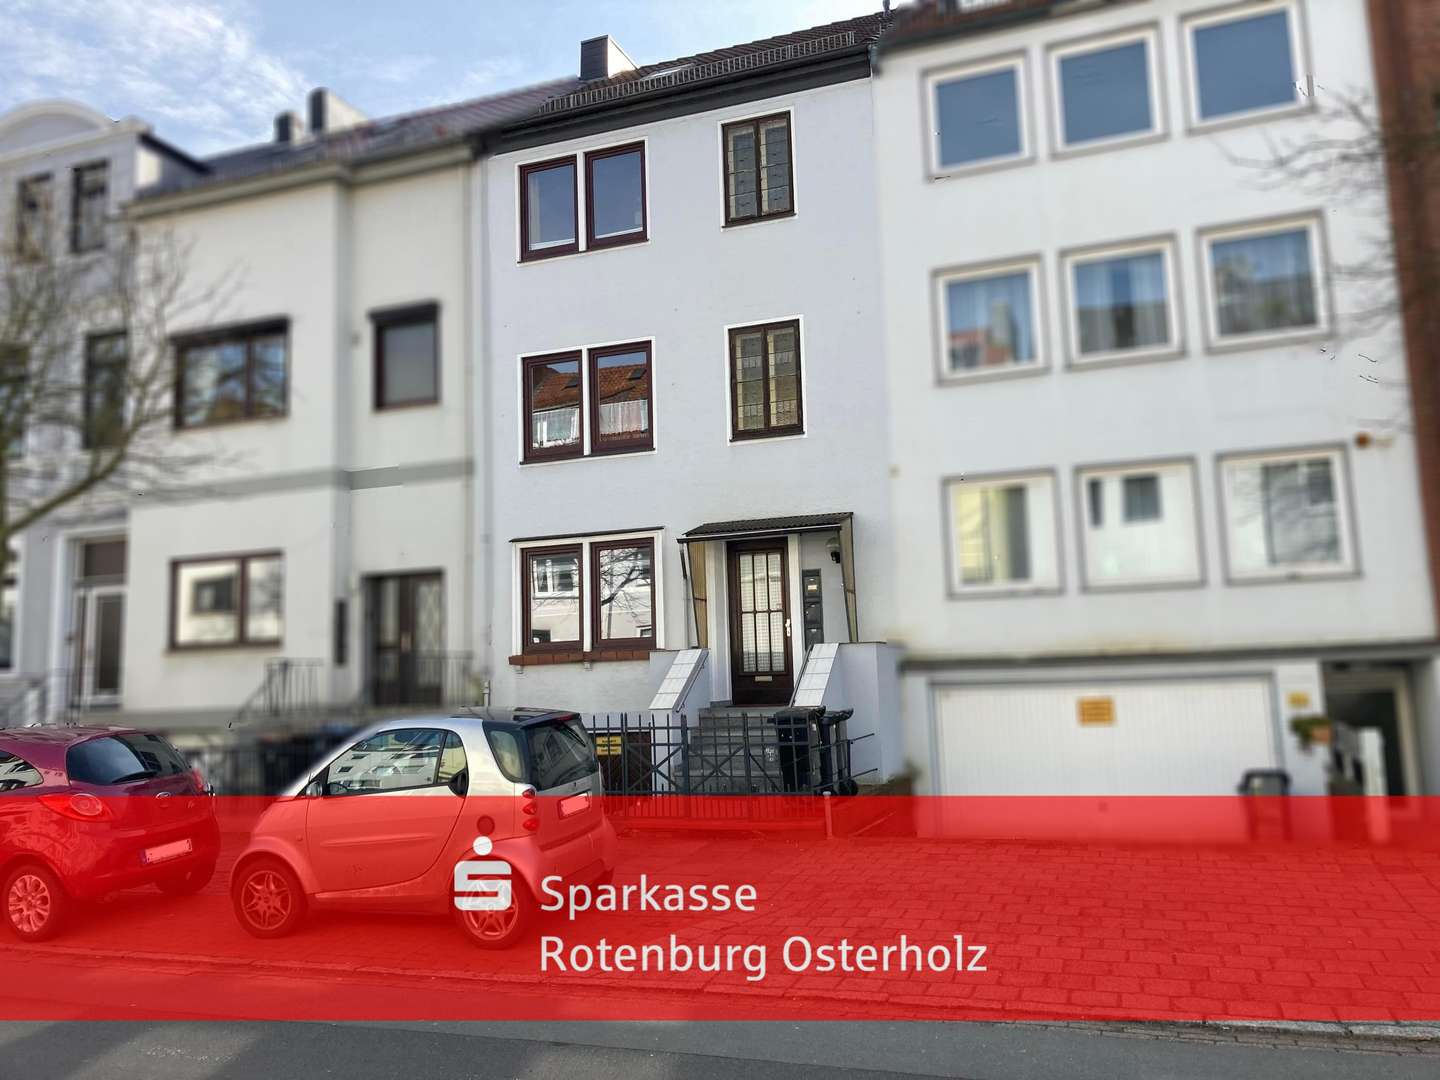 Gelegenheit zum Investieren! 3-Familienhaus in der Bremer Neustadt - Mehrfamilienhaus in 28201 Bremen mit 149m² als Kapitalanlage kaufen